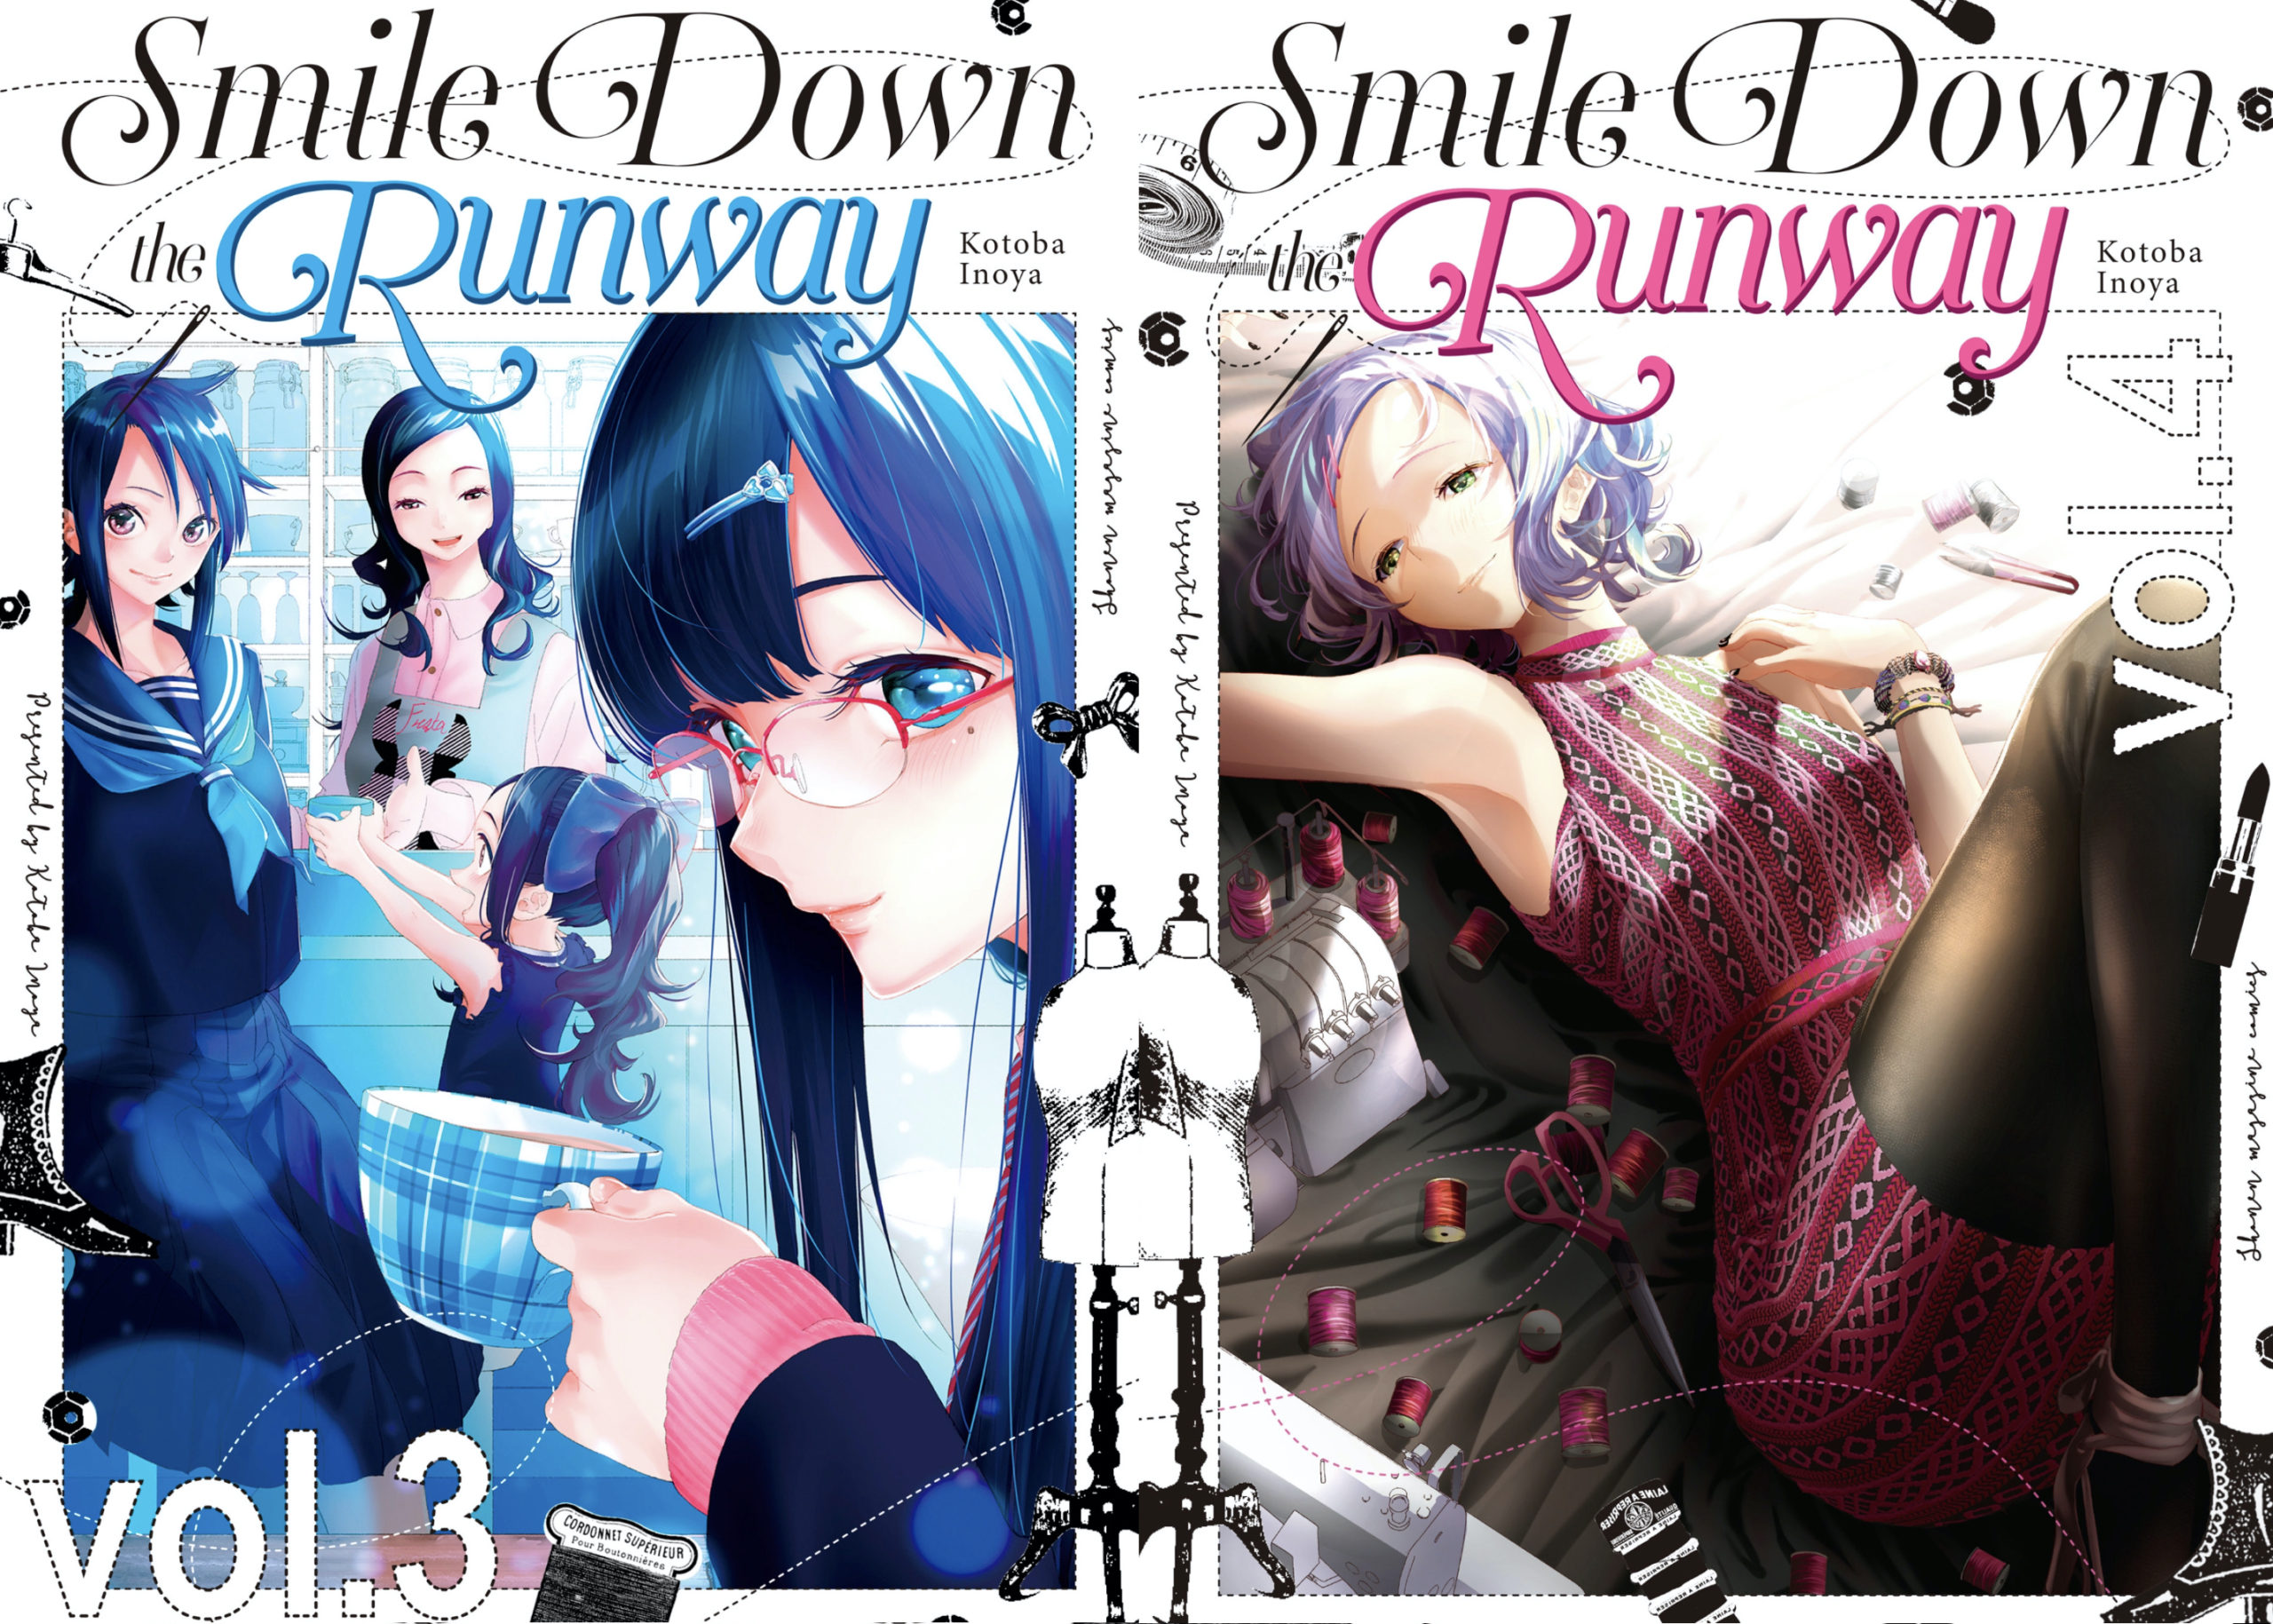 Smile Down the Runway, mangá sobre modelo que sonha em desfilar nas  passarelas de Paris, chegará ao fim em três capítulos no Japão -  Crunchyroll Notícias